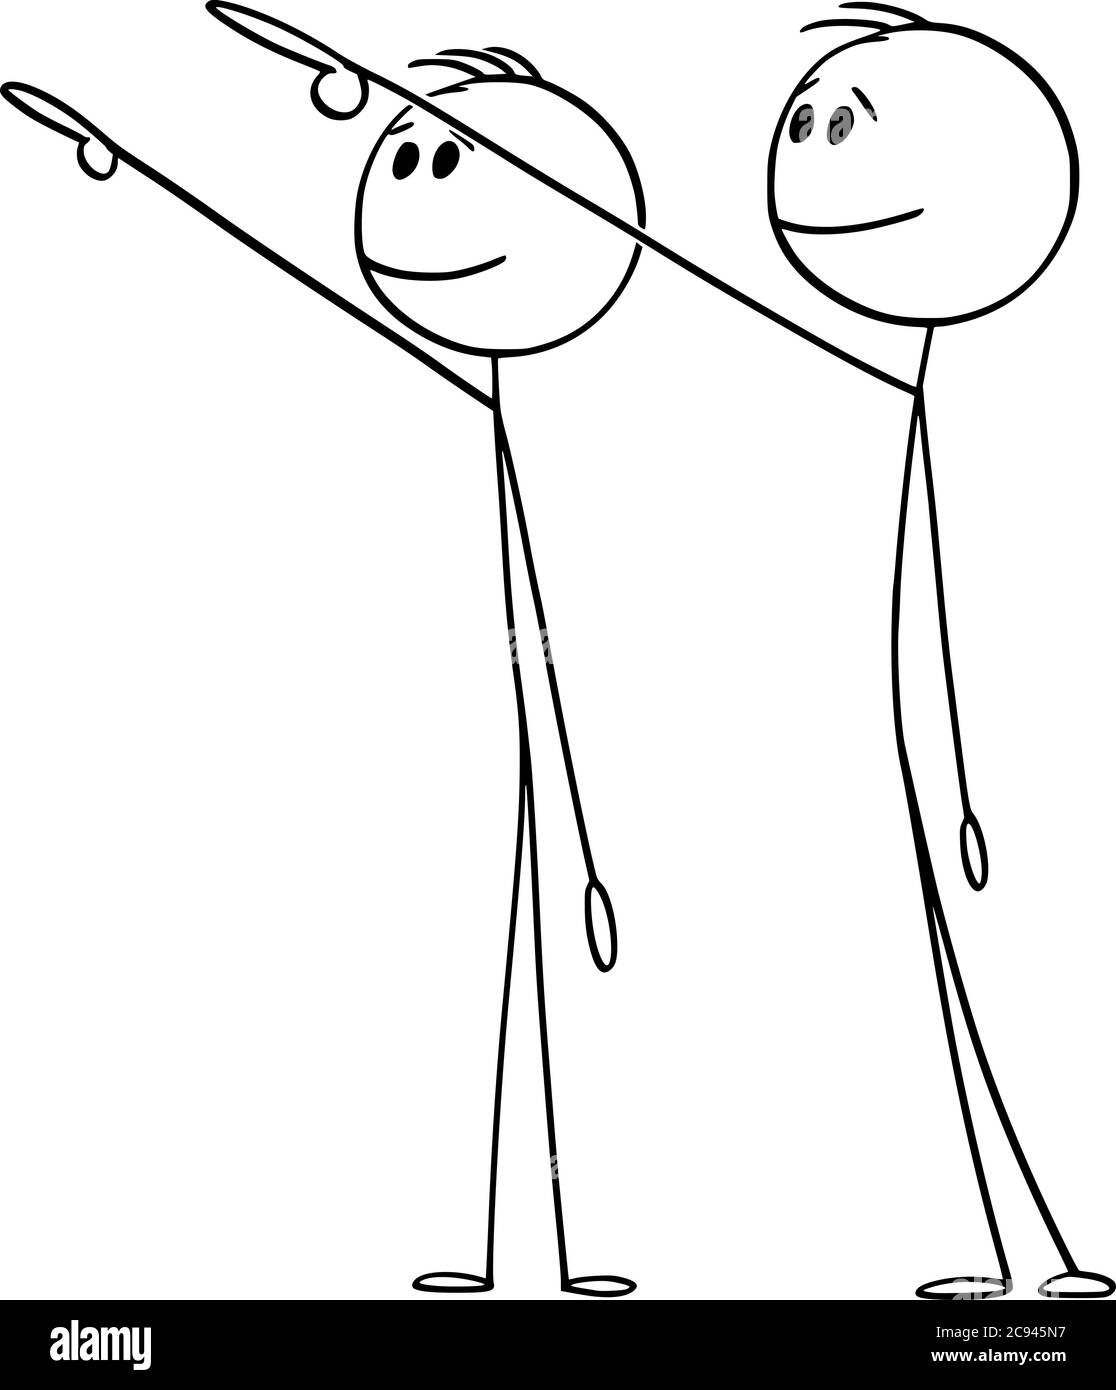 Figura del cartoon vettoriale disegno illustrazione concettuale di due uomini o uomini d'affari che mostrano, puntano o presentano qualcosa lontano, alto o alto sopra di loro. Illustrazione Vettoriale